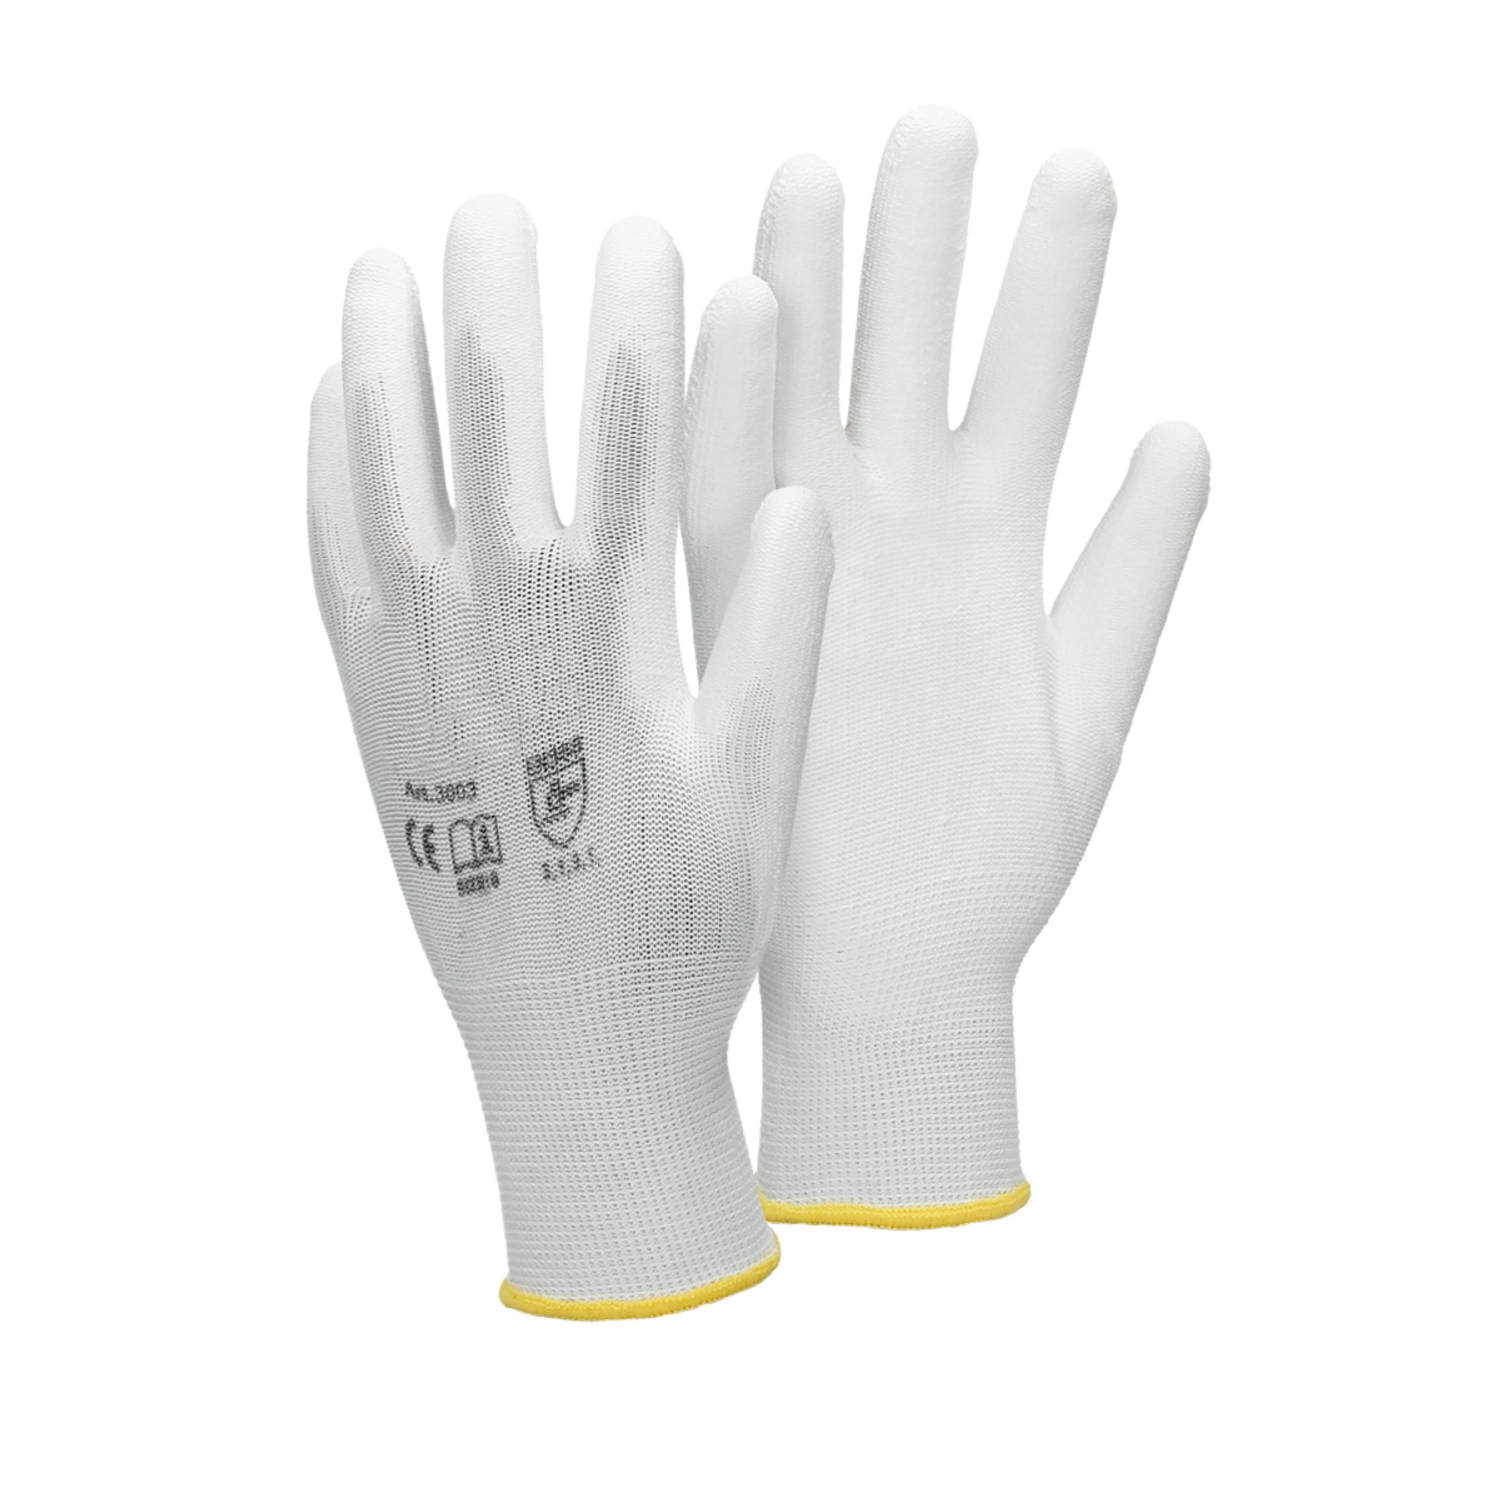 ECD Germany 24 paar werkhandschoenen met PU coating - maat 8-M - wit - monteurshandschoenen montagehandschoenen beschermende handschoenen tuinhandschoenen - diverse kleuren & maten